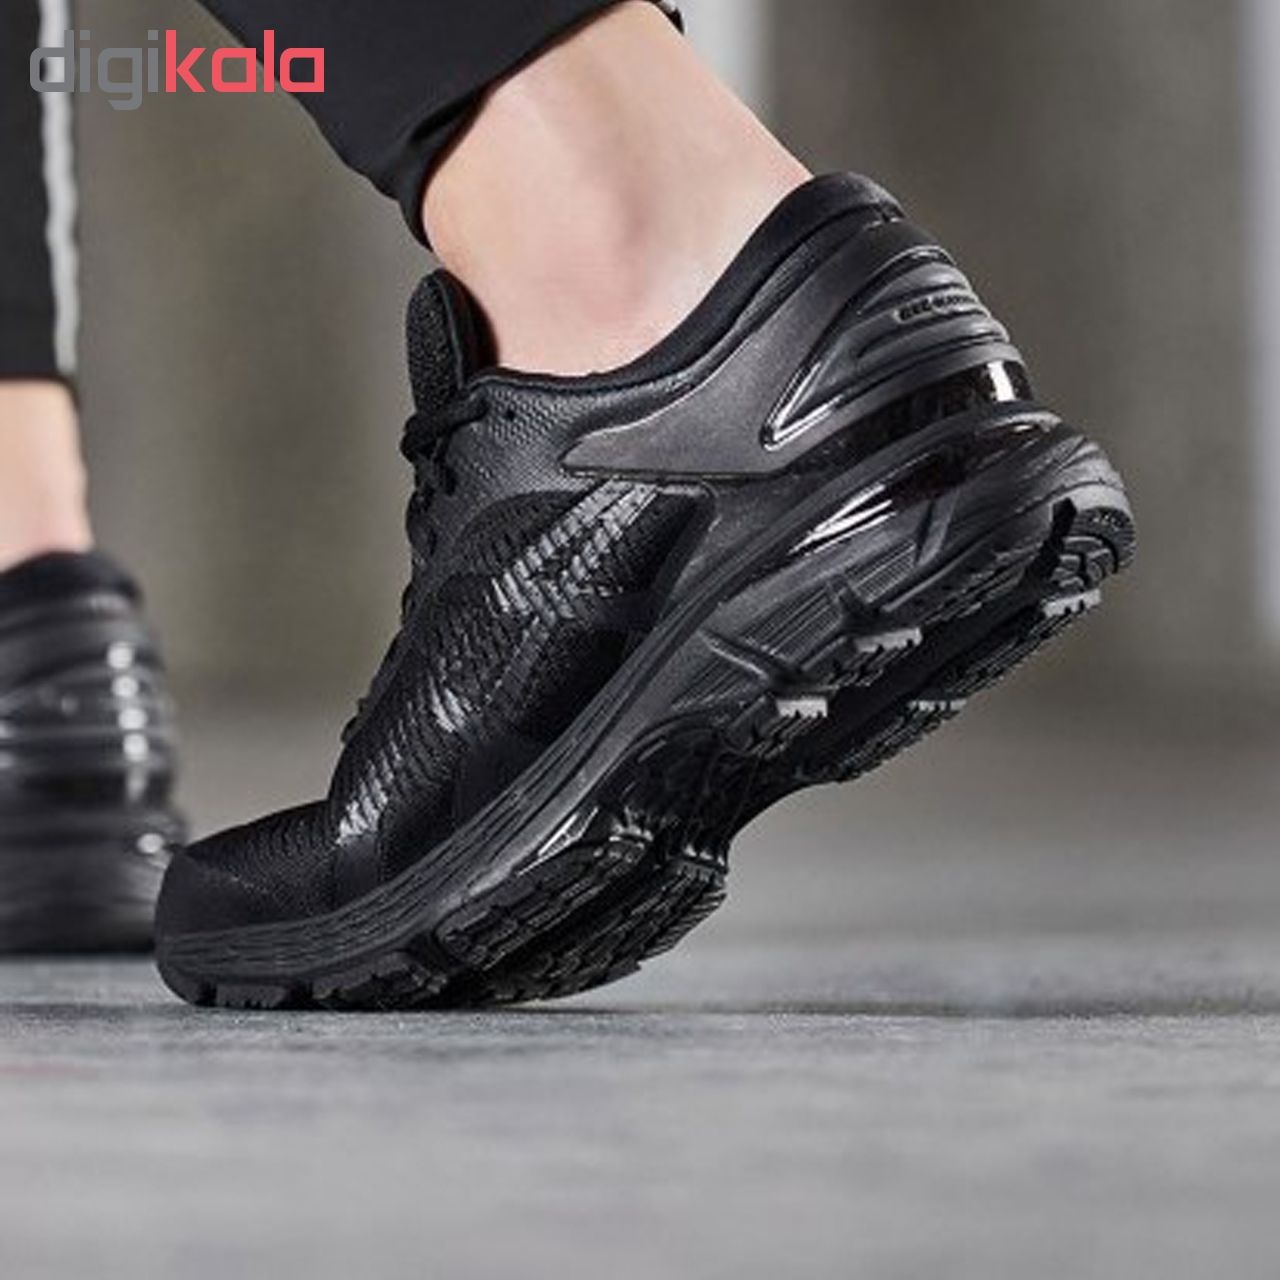  کفش مخصوص دویدن مردانه اسیکس مدل   kayano کد T8756-09